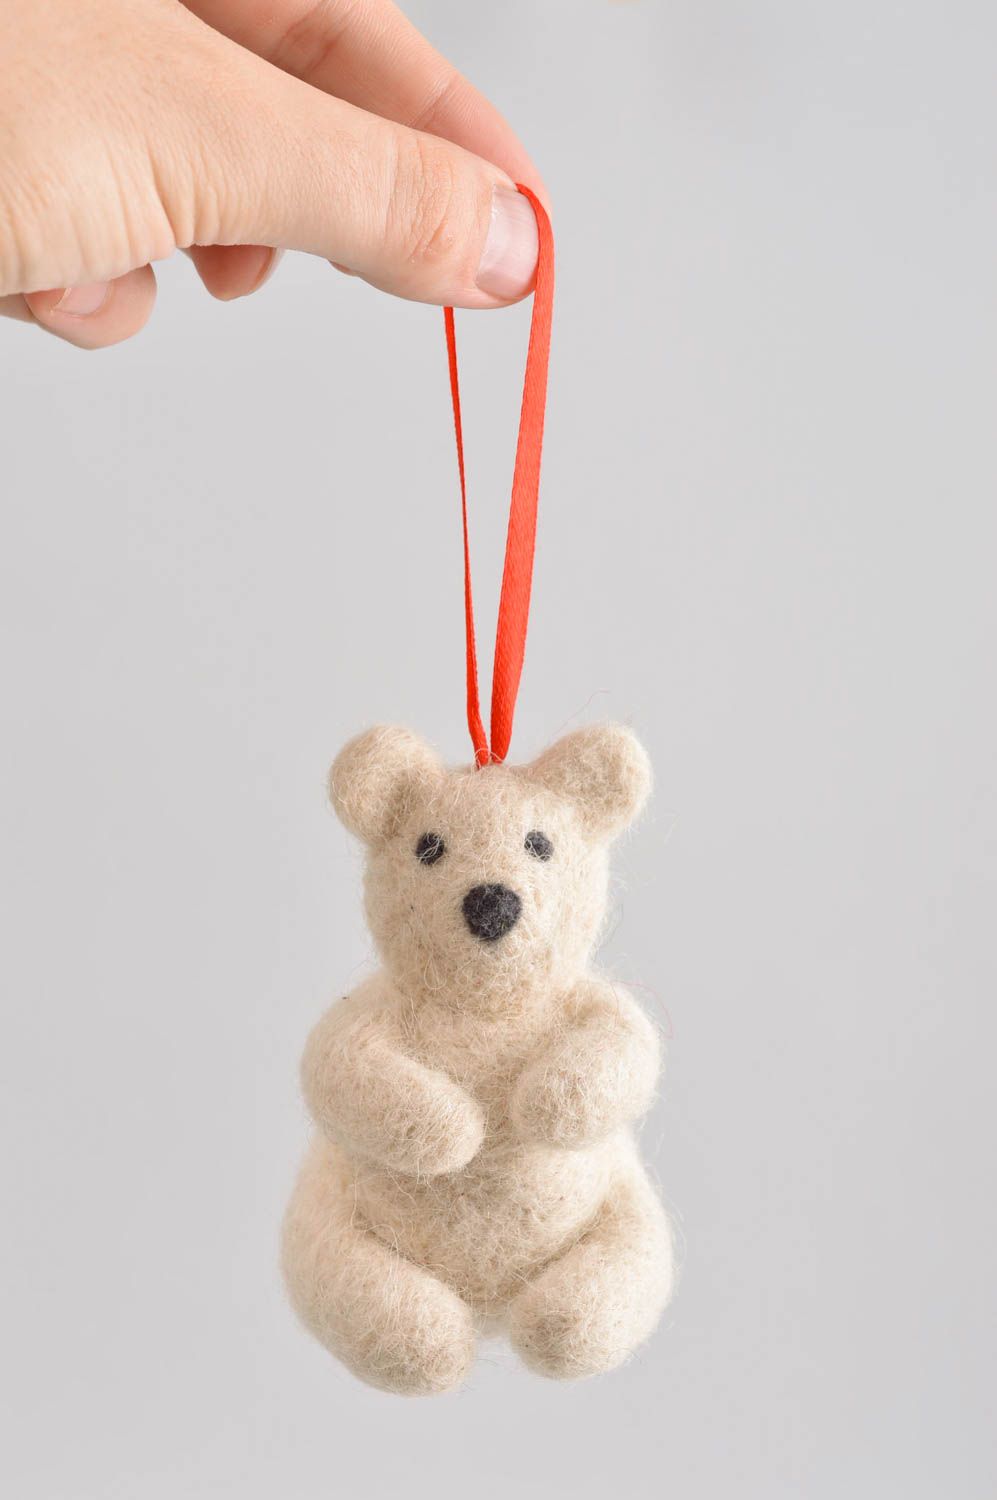 Handmade toy gift ideas designer toy for children woolen toy for nursery decor photo 5